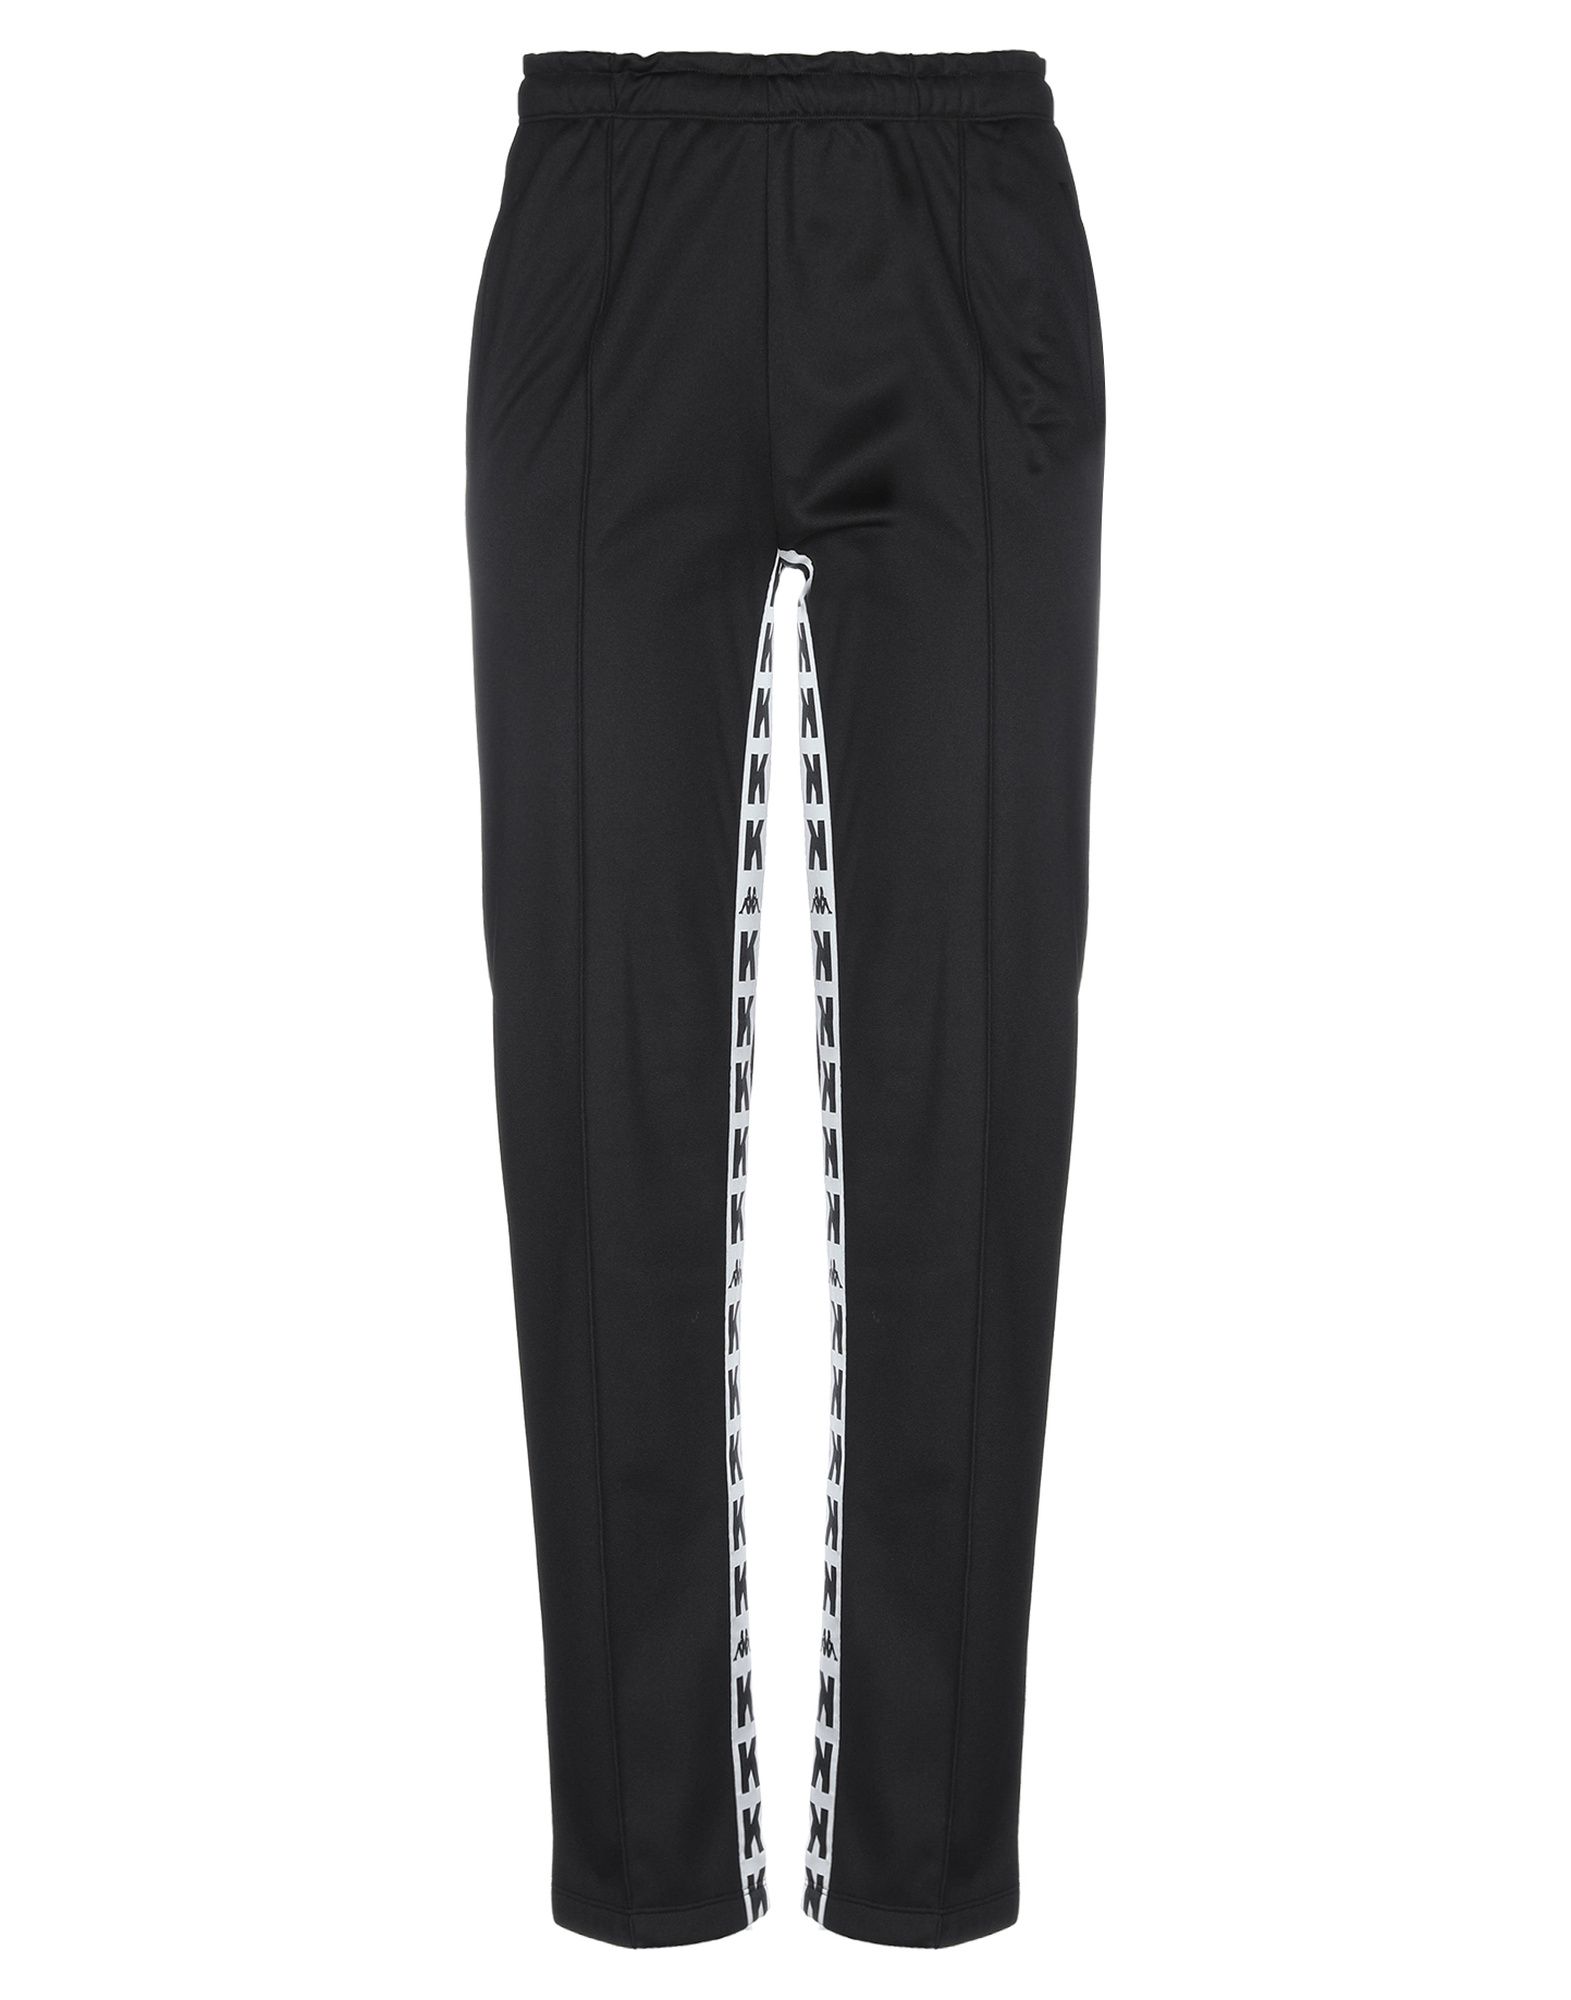 Shop Kappa Kontroll Woman Pants Black Size S Polyester